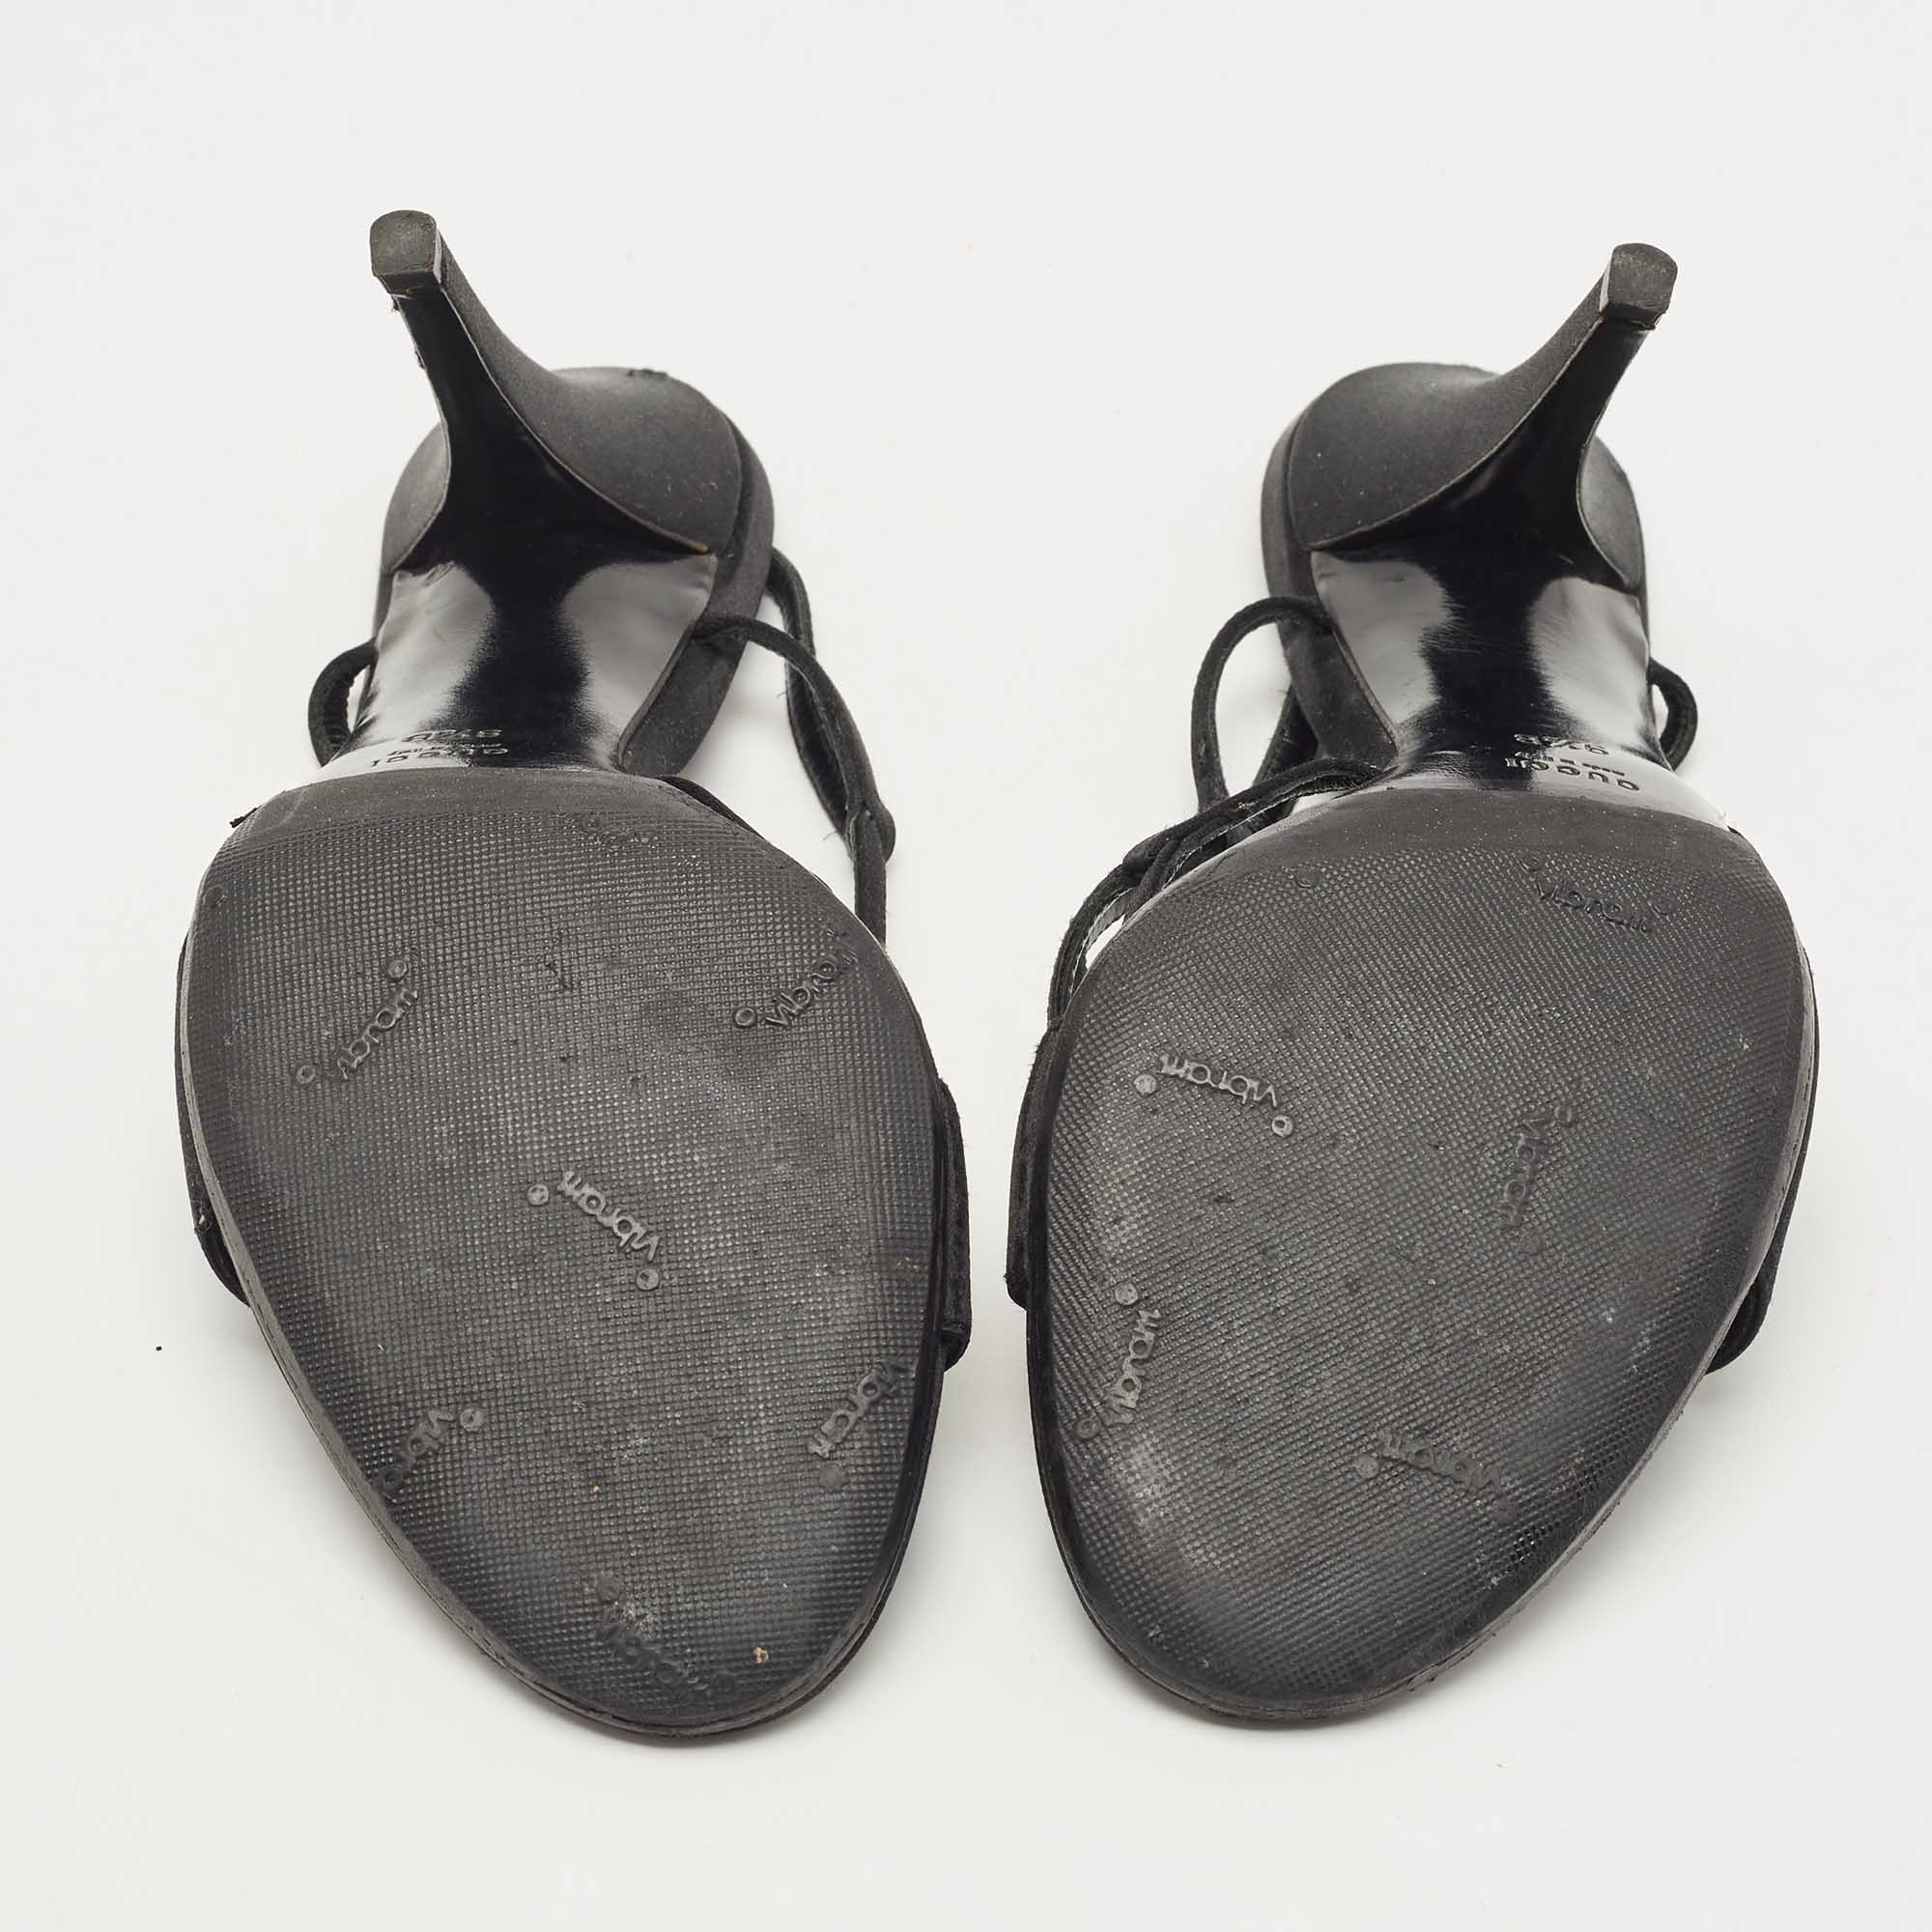 Gucci Black Satin Strappy Sandals Size 39.5